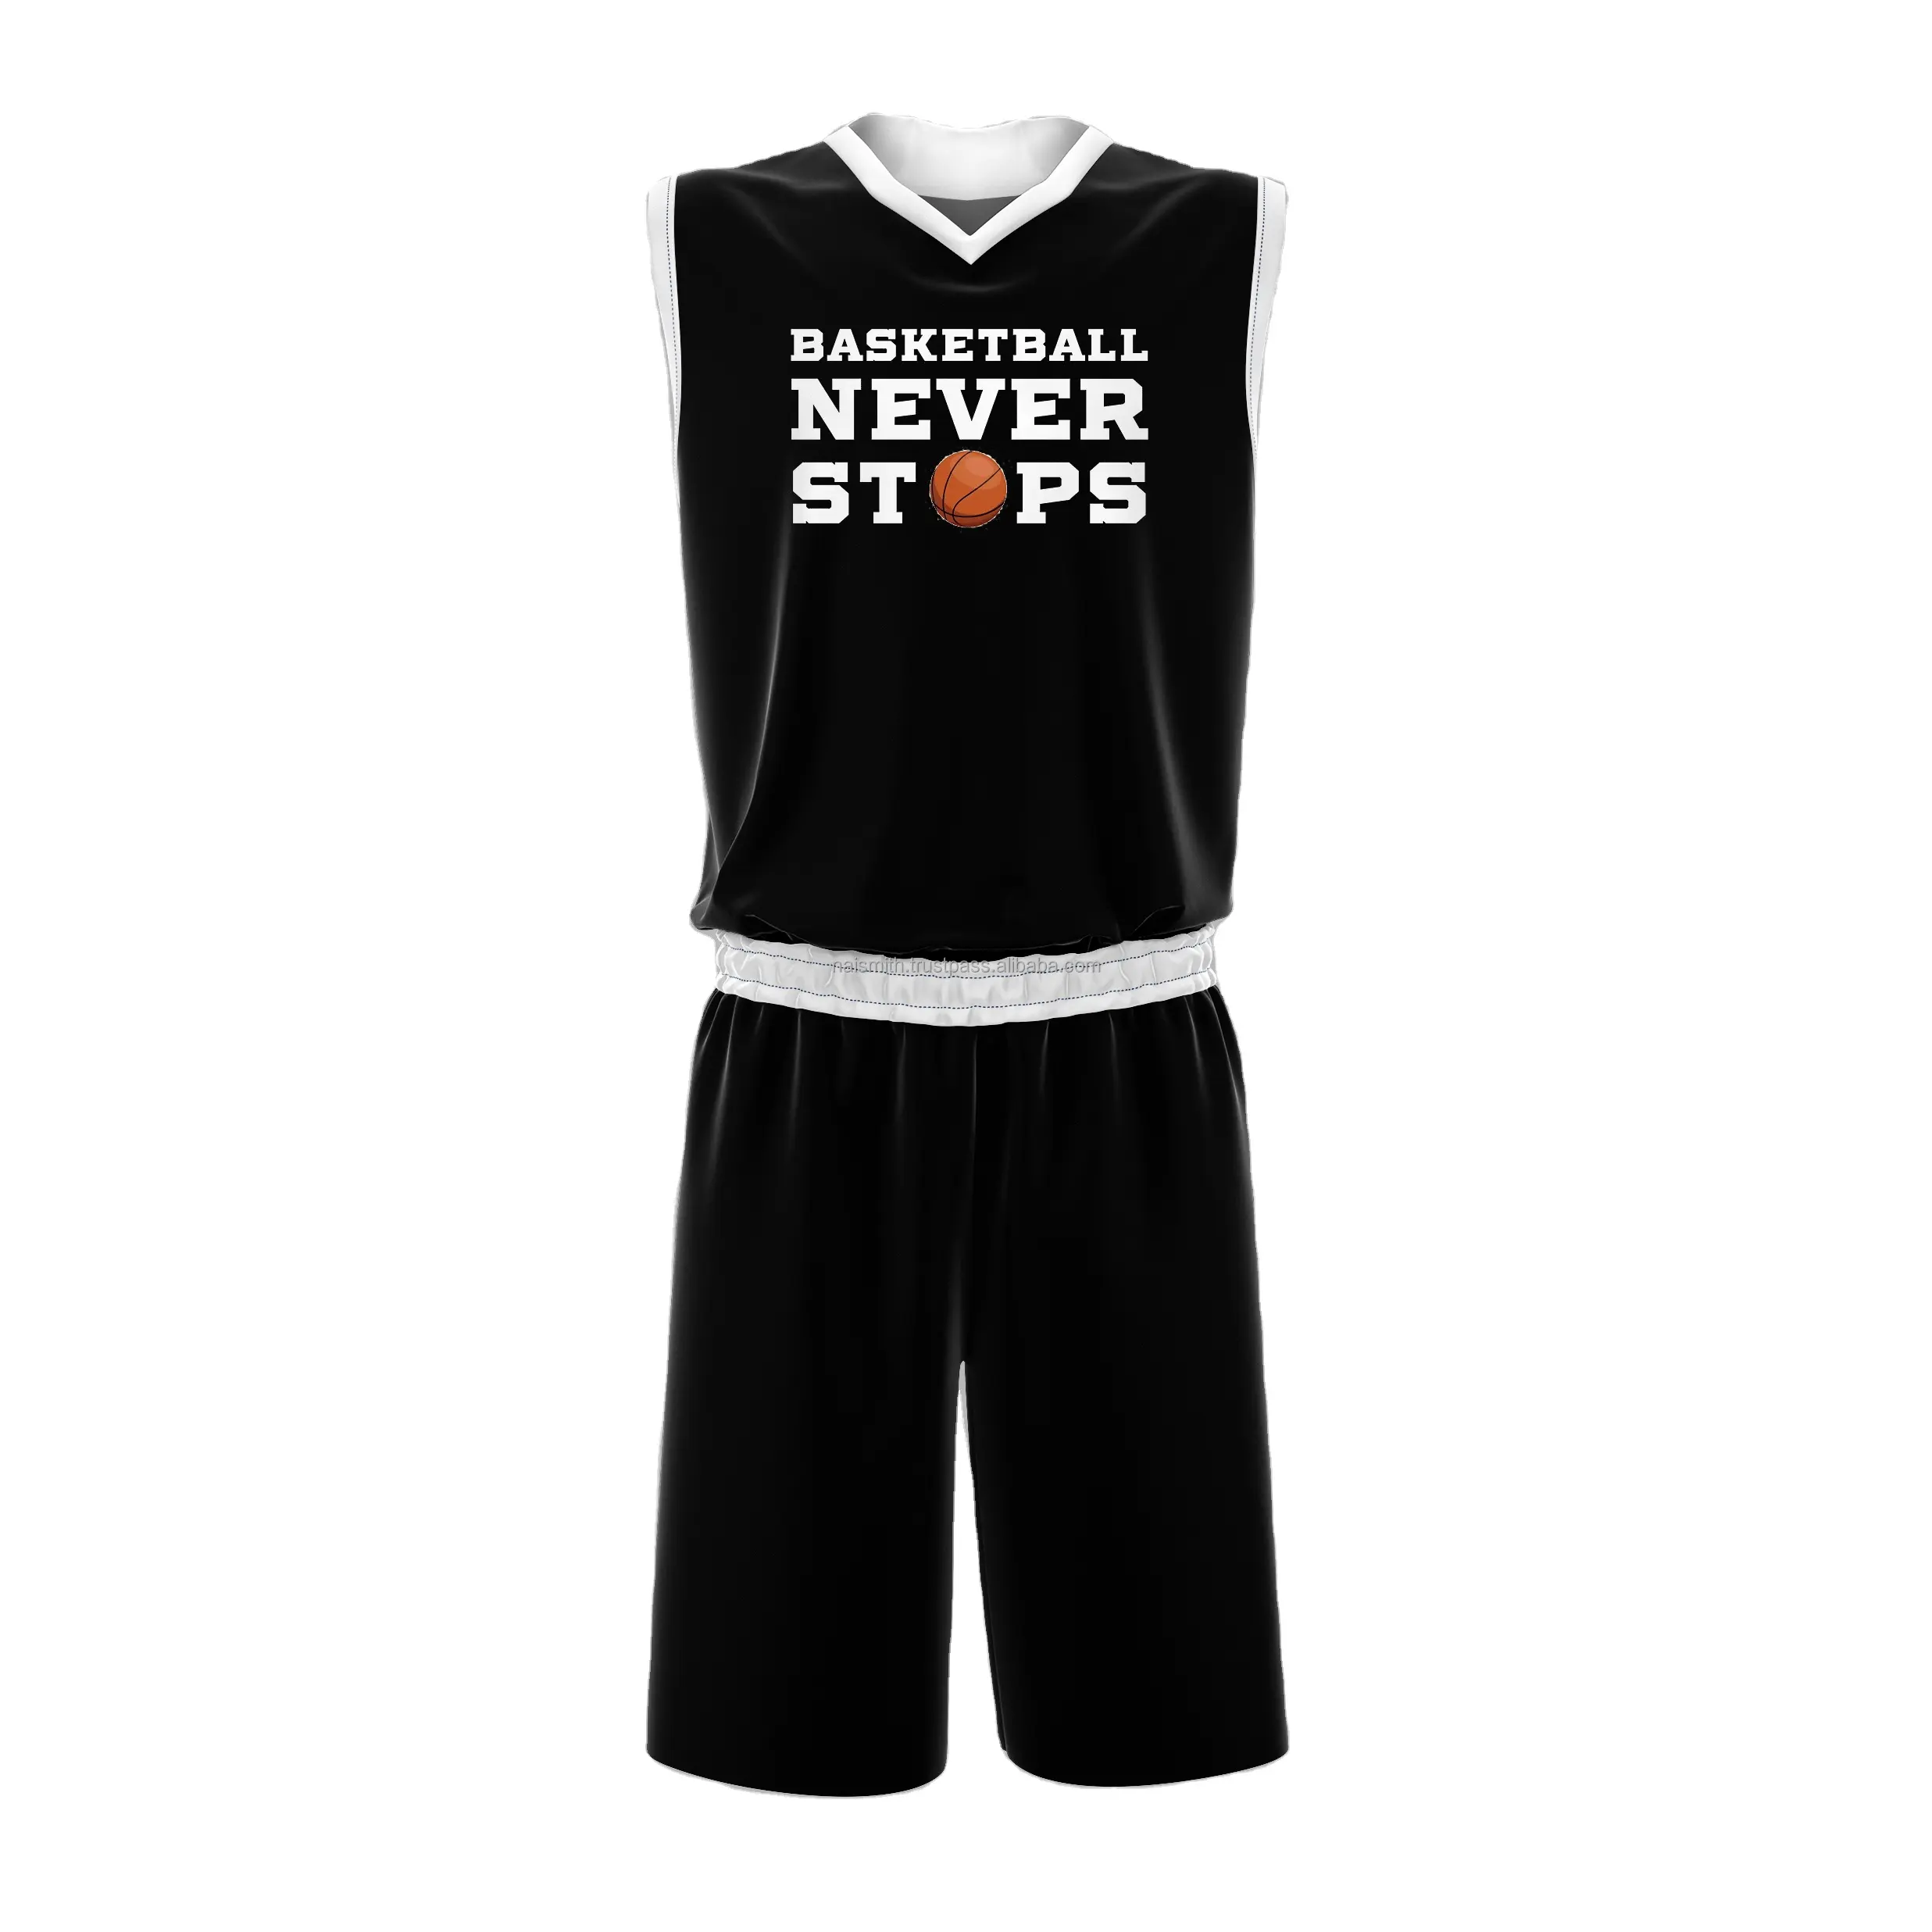 Ropa de baloncesto personalizada, Etiqueta Privada, barata, jersey de baloncesto, uniforme de baloncesto de diseño personalizado